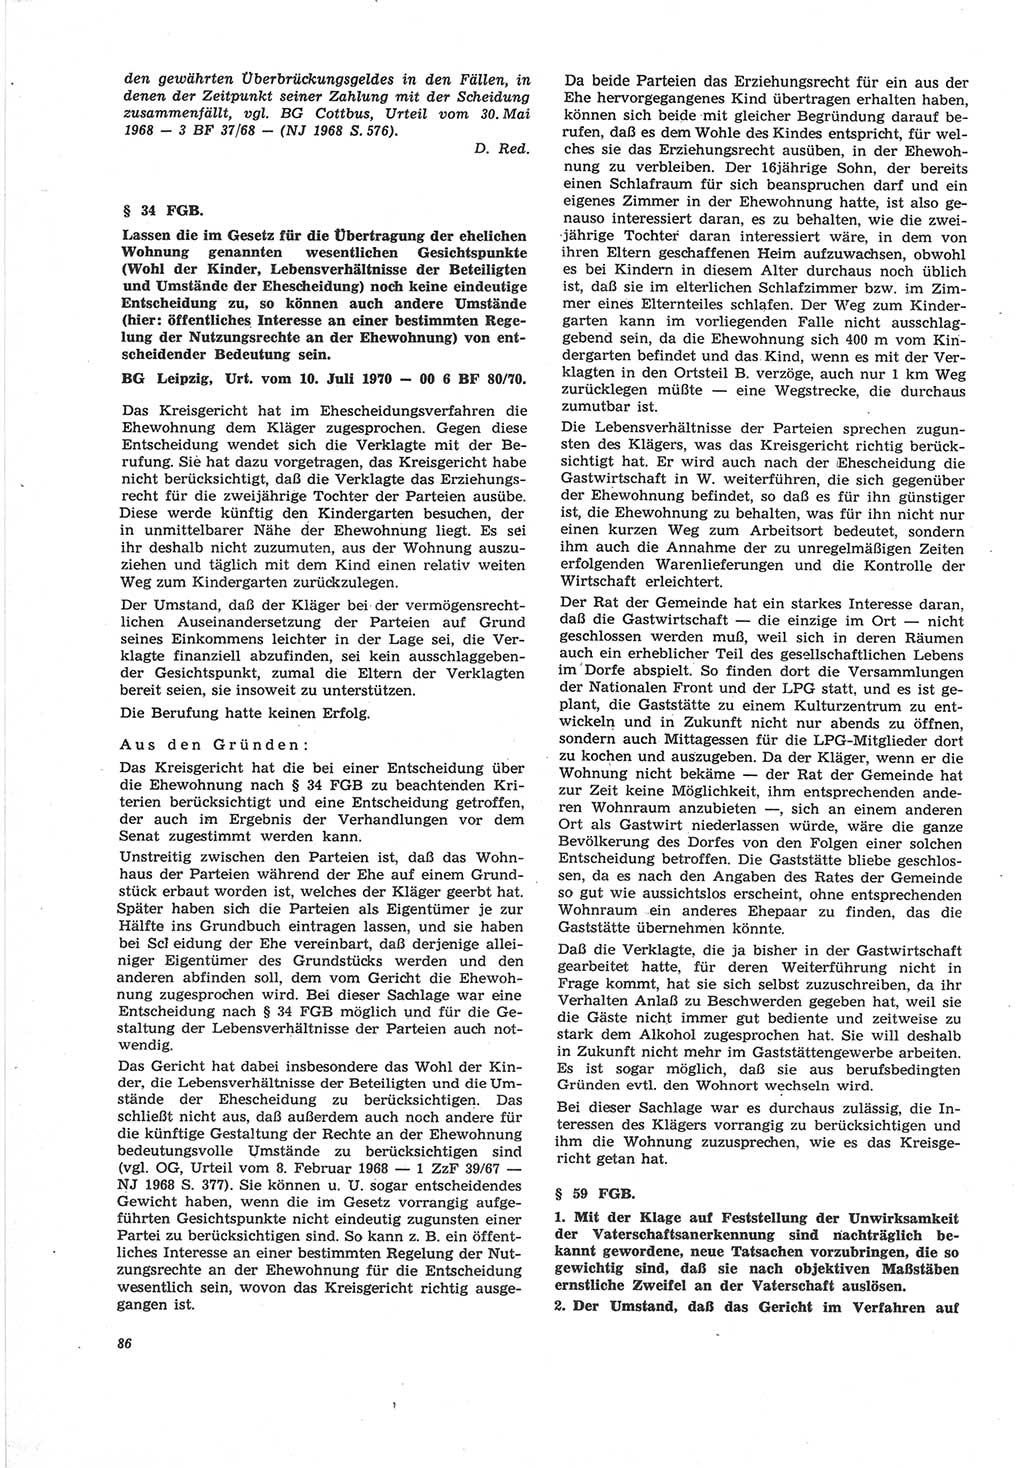 Neue Justiz (NJ), Zeitschrift für Recht und Rechtswissenschaft [Deutsche Demokratische Republik (DDR)], 25. Jahrgang 1971, Seite 86 (NJ DDR 1971, S. 86)